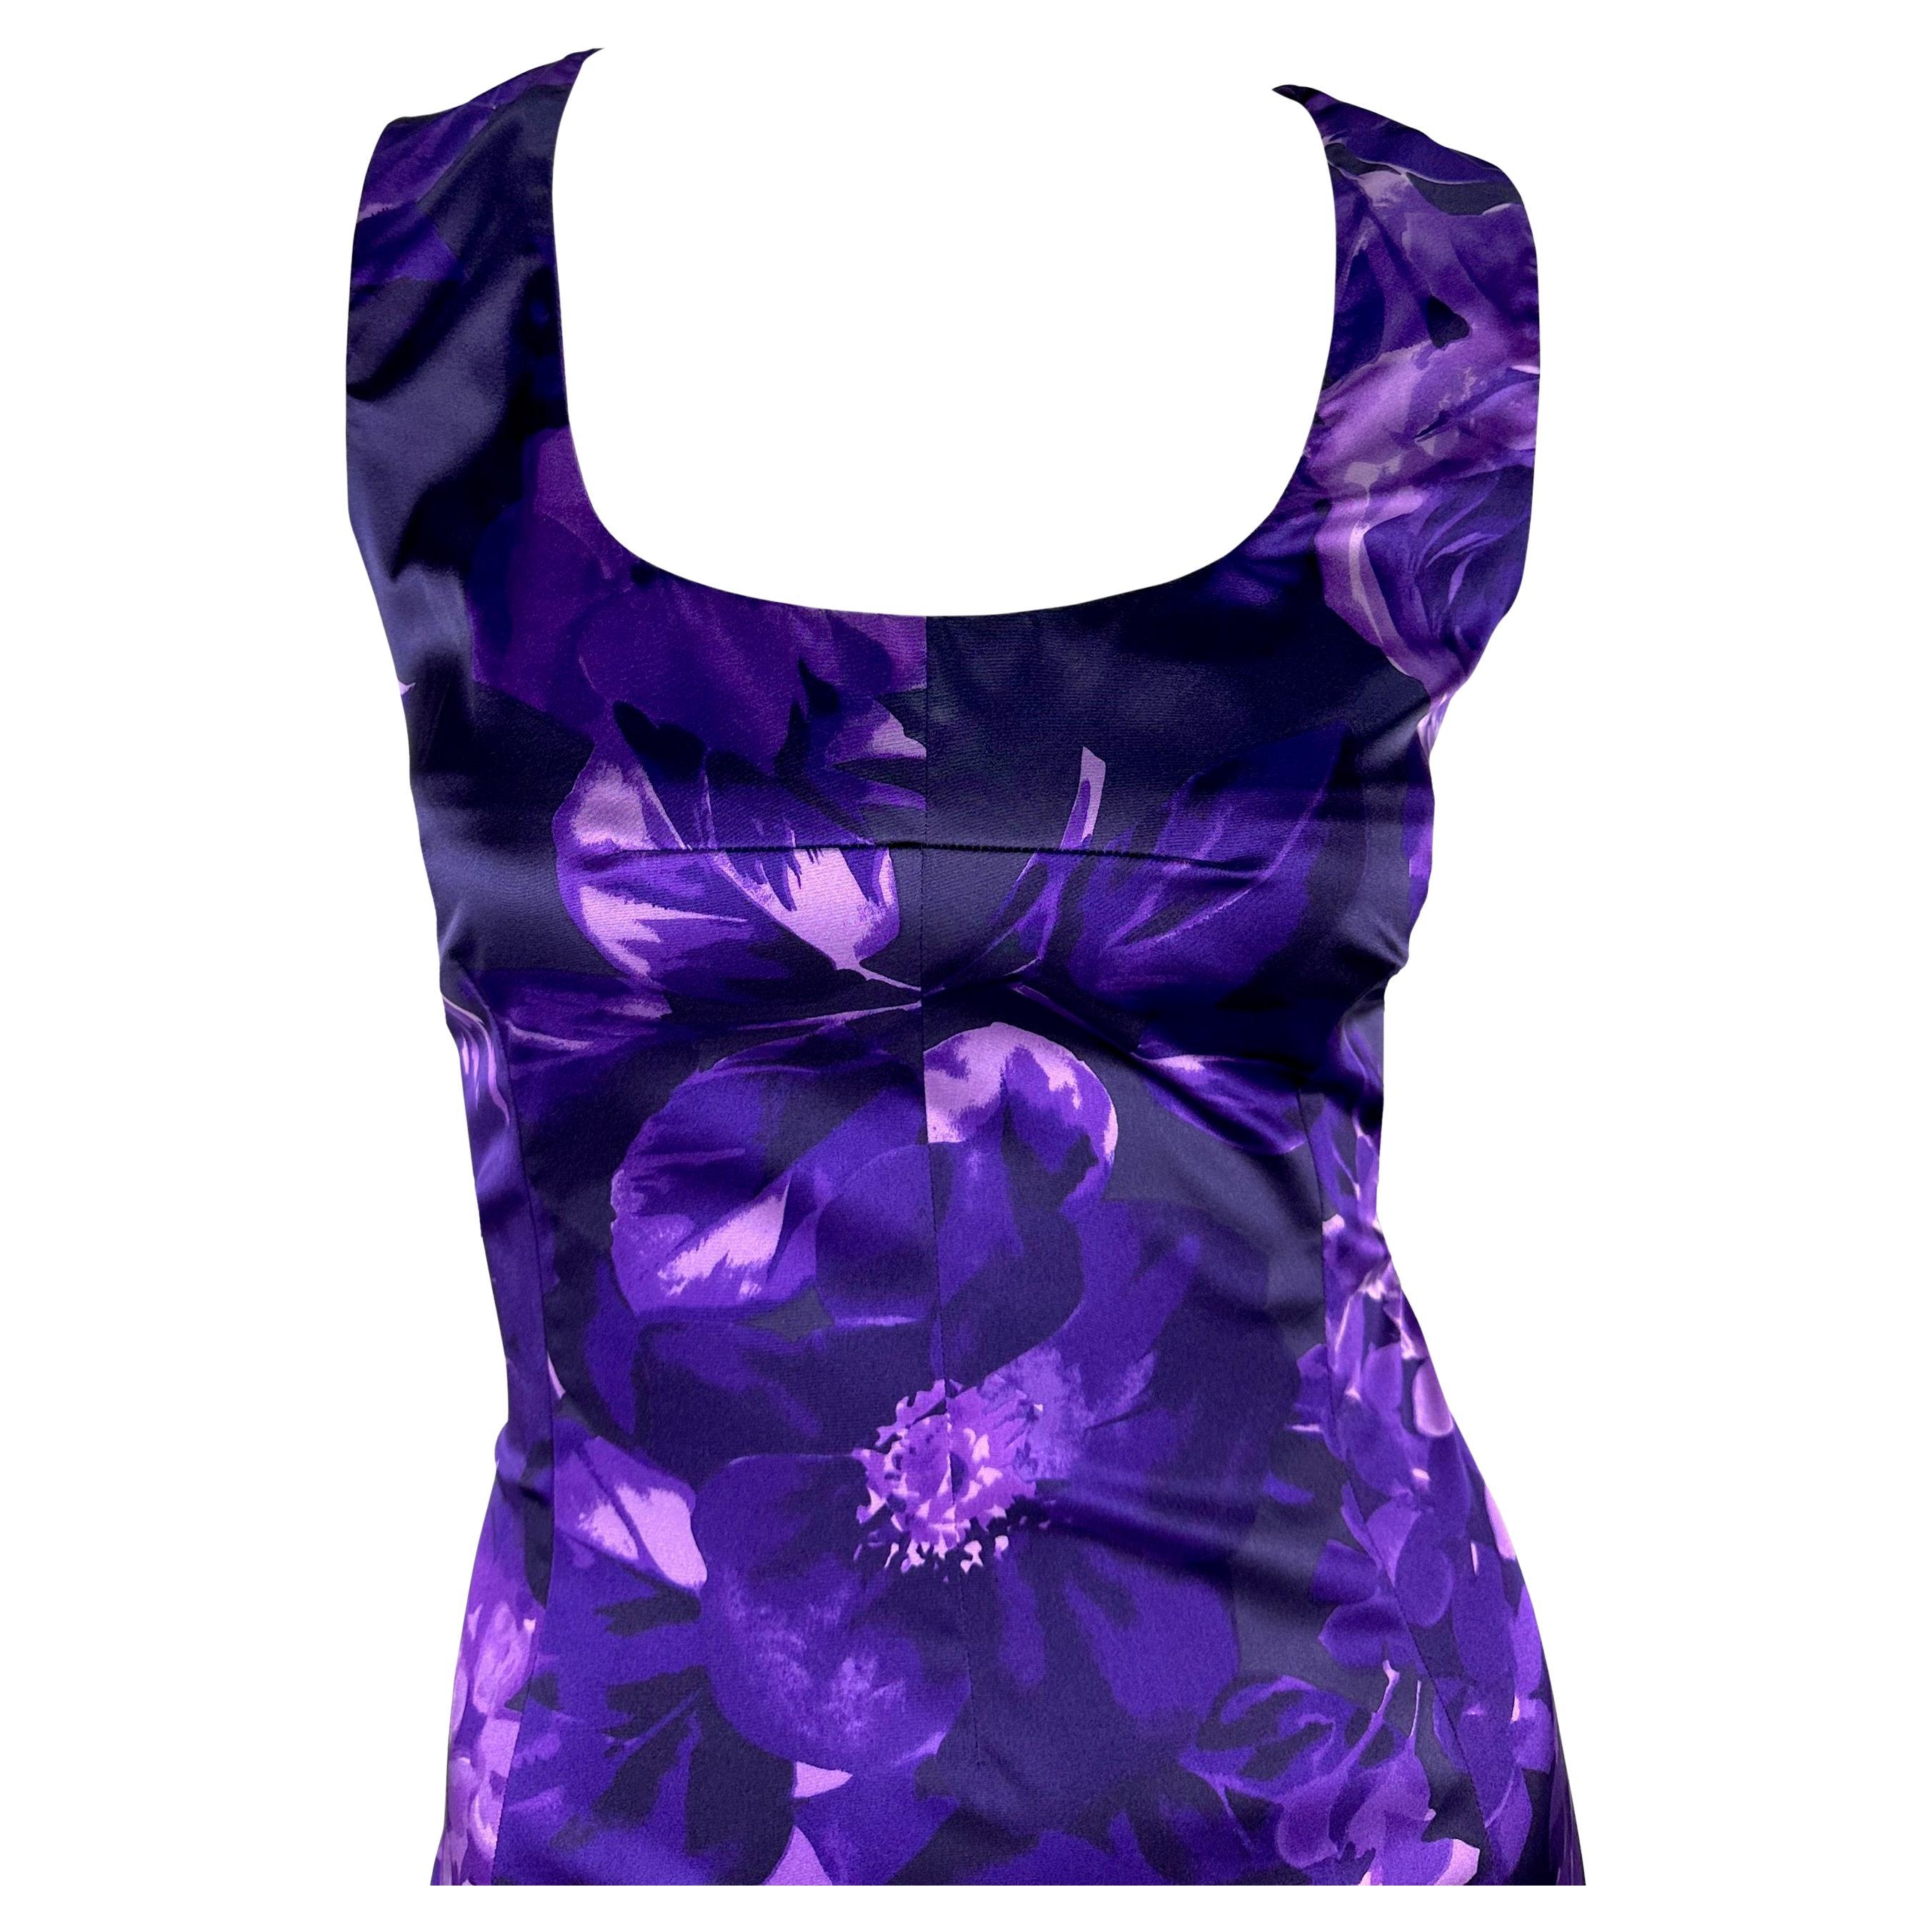 Cette robe au genou de Dolce & Gabbana est recouverte d'un motif floral vibrant aux teintes violettes, qui galbe joliment le corps. Avec son encolure dégagée et ses larges bretelles, cette robe satinée s'impose dans toutes les garde-robes. 

Mesures